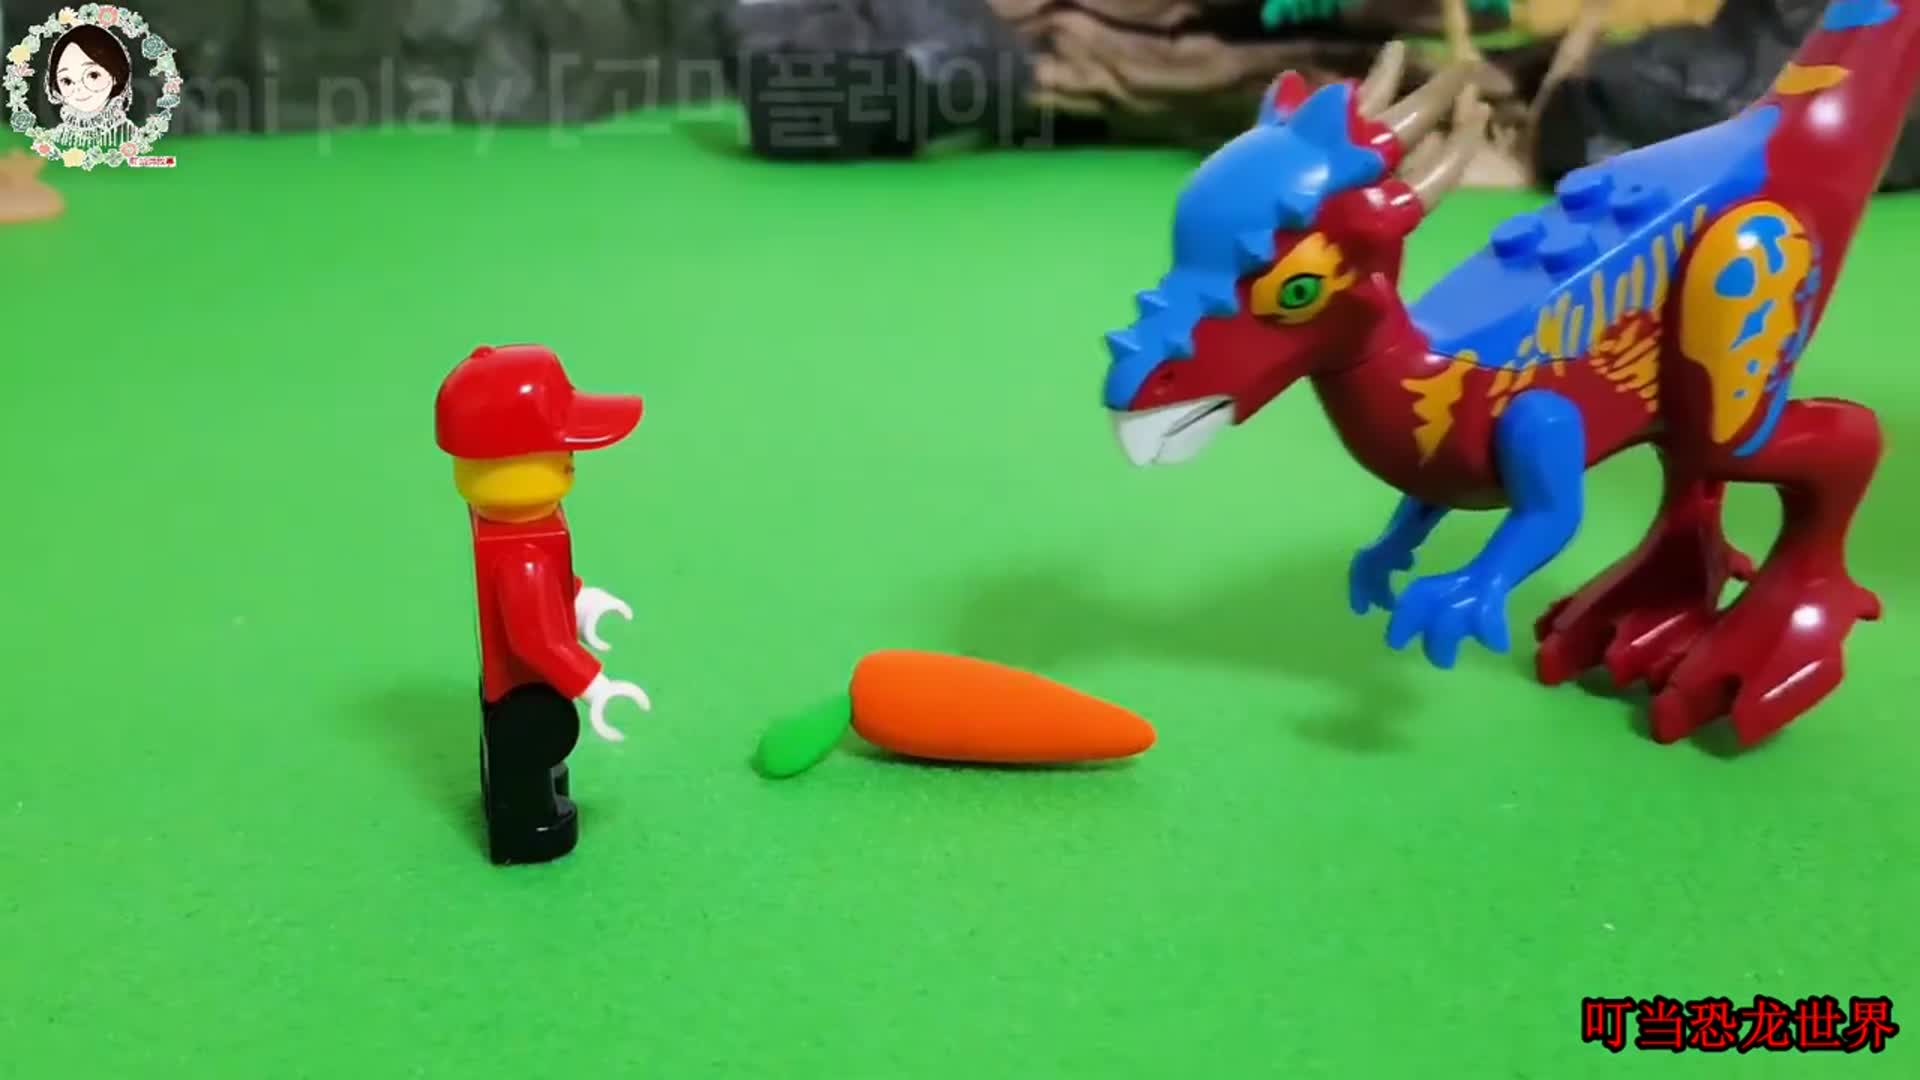 坏蛋重爪龙攻击恐龙宝宝，牛龙妈妈和牛龙爸爸赶来打败坏蛋恐龙